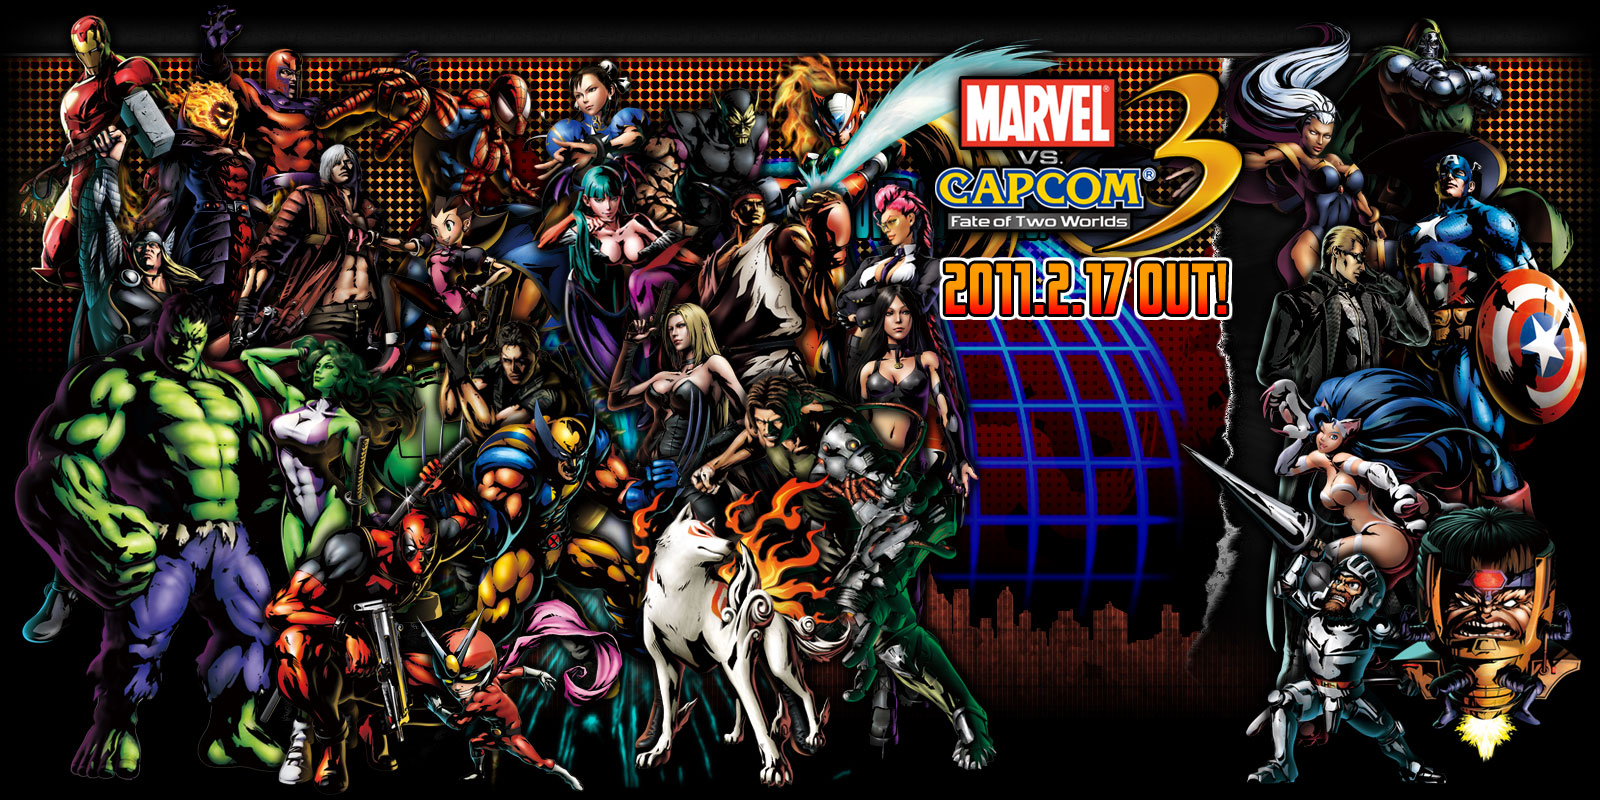 Marvel Vs. Capcom 3 #3